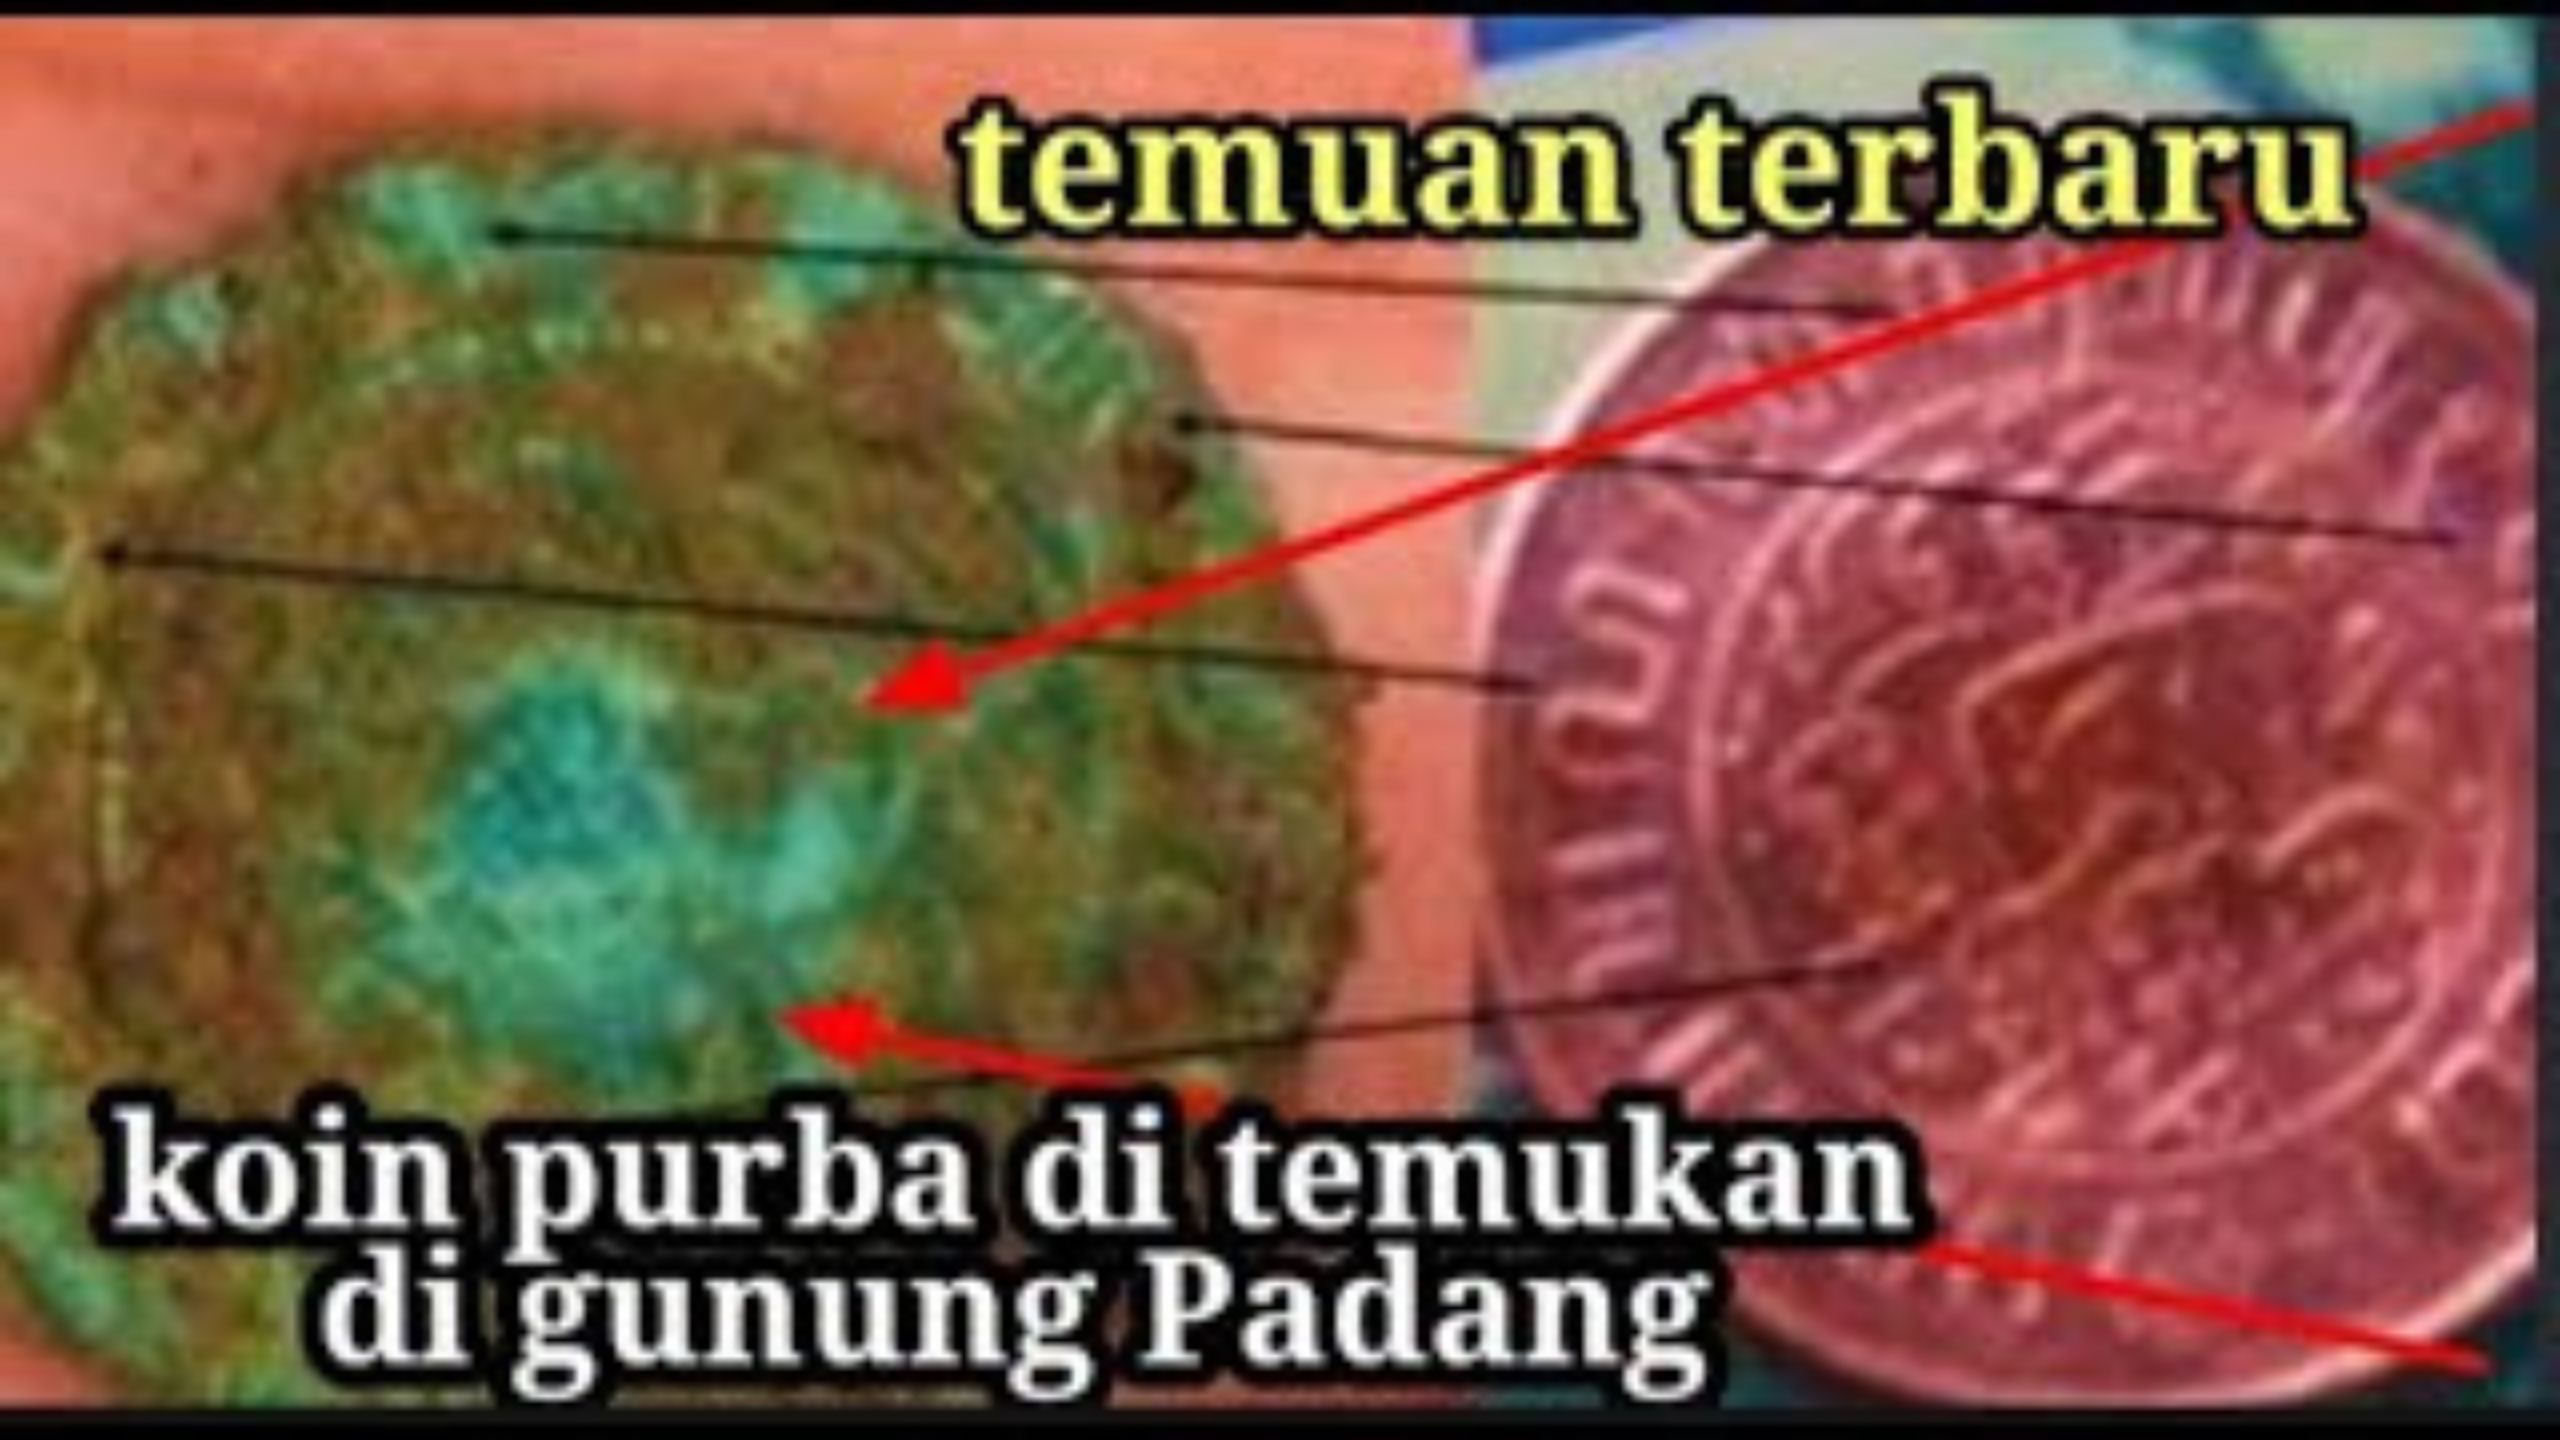 Kontroversi Riset Gunung Padang, Koin Gunung Padang dan Kemiripannya dengan Uang Tahun 1945, Begini Temuannya!